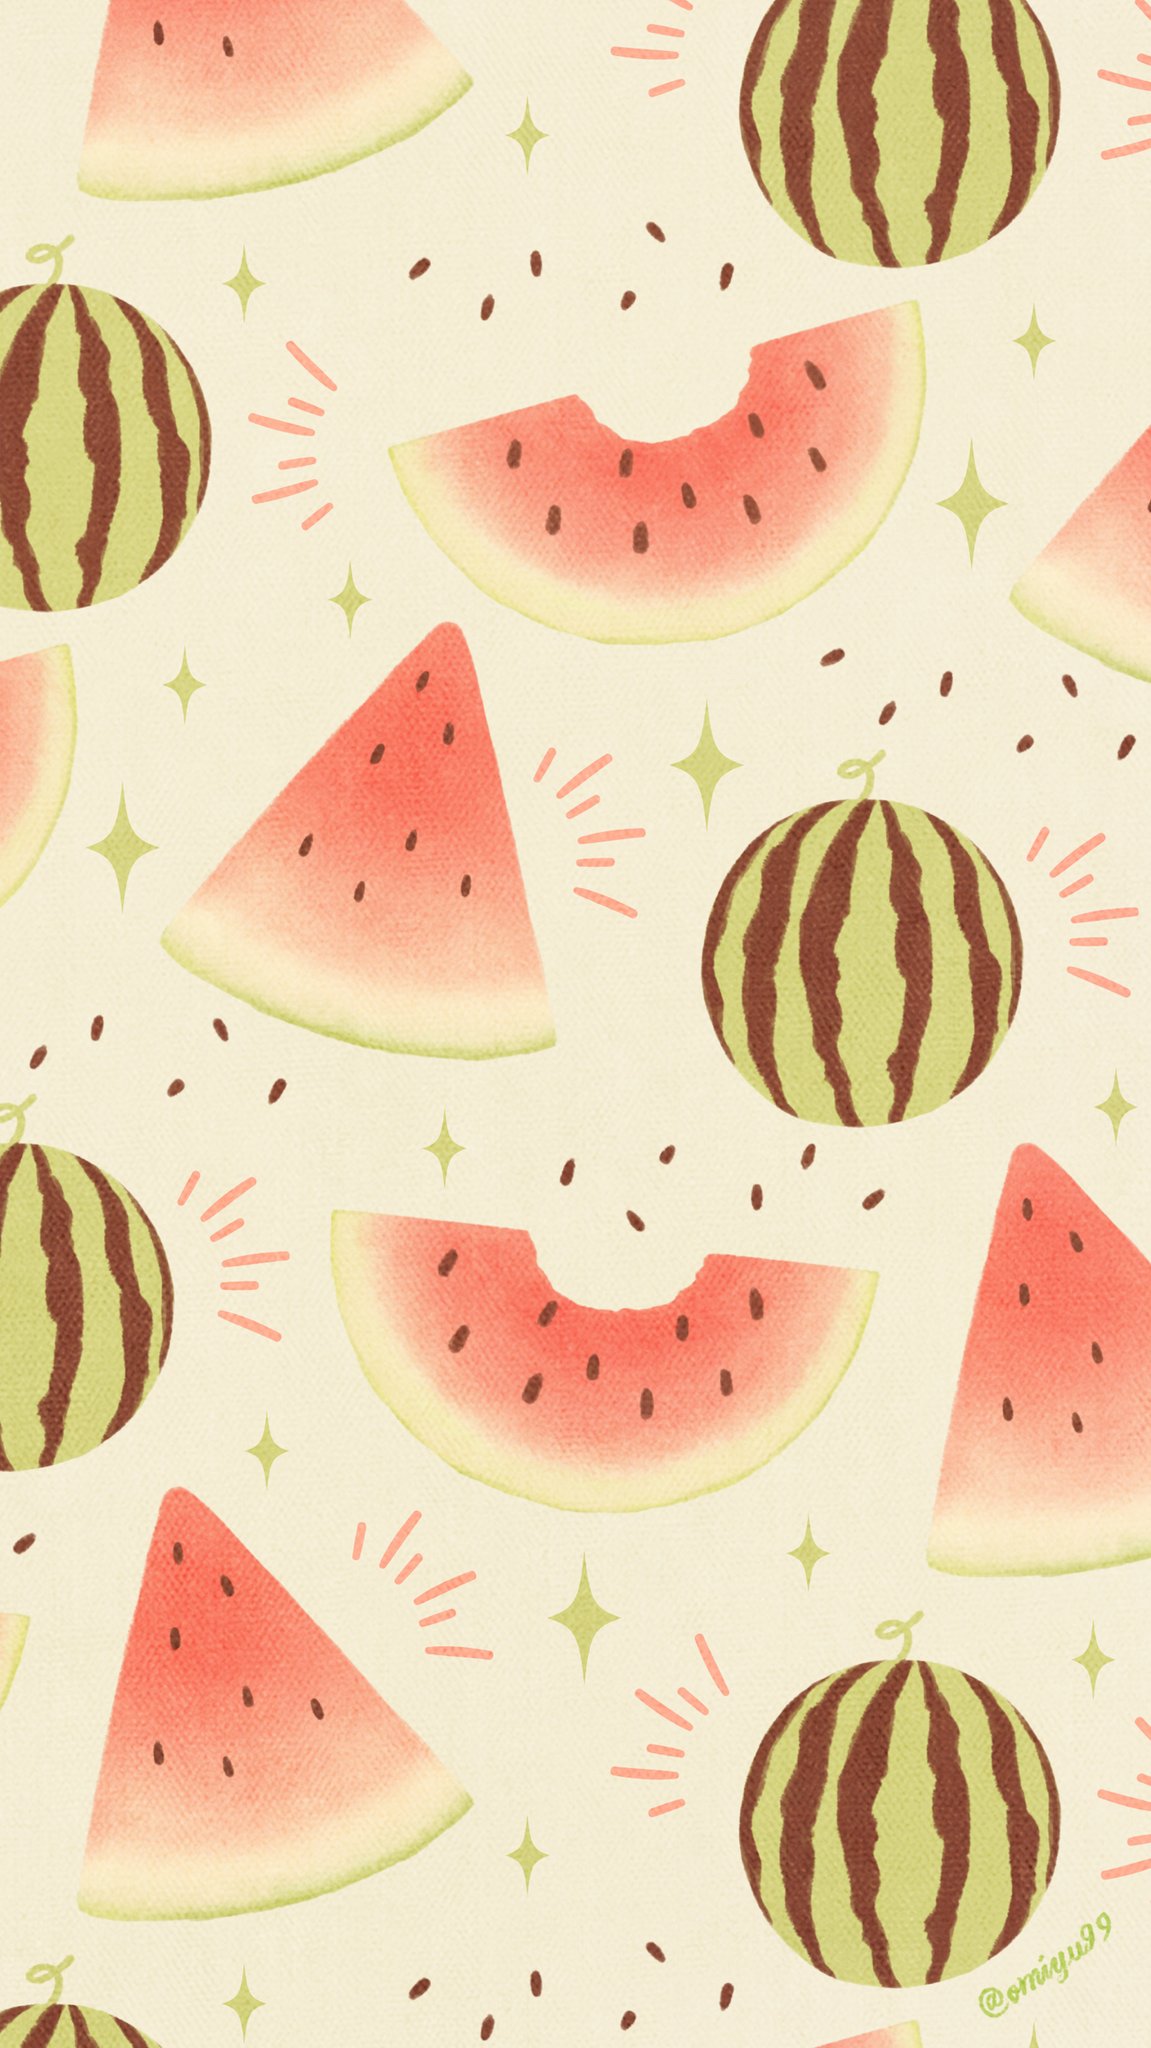 Omiyu お返事遅くなります Twitterren スイカな壁紙 Illust Illustration 壁紙 イラスト Iphone壁紙 スイカ Watermelon 食べ物